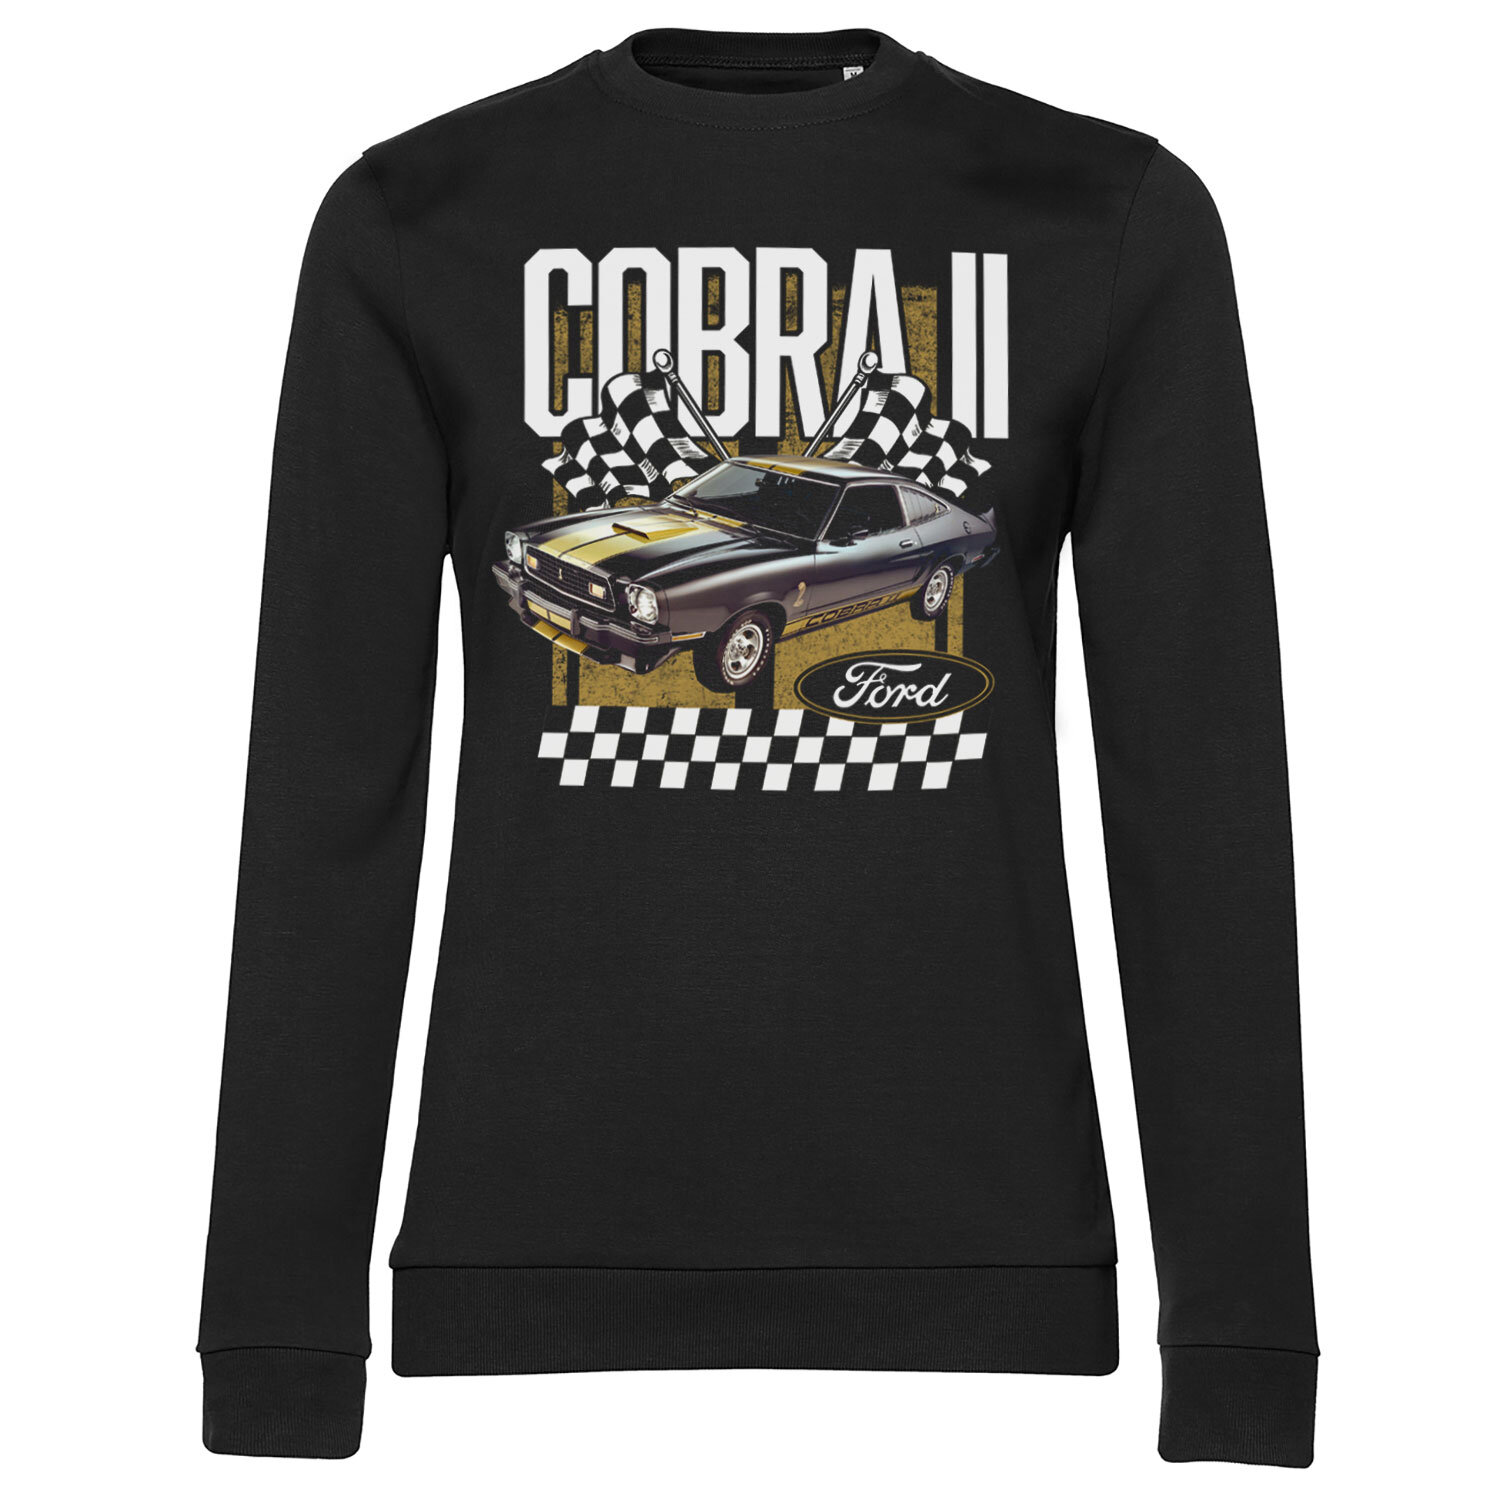 Ford Cobra II Girly Sweatshirt